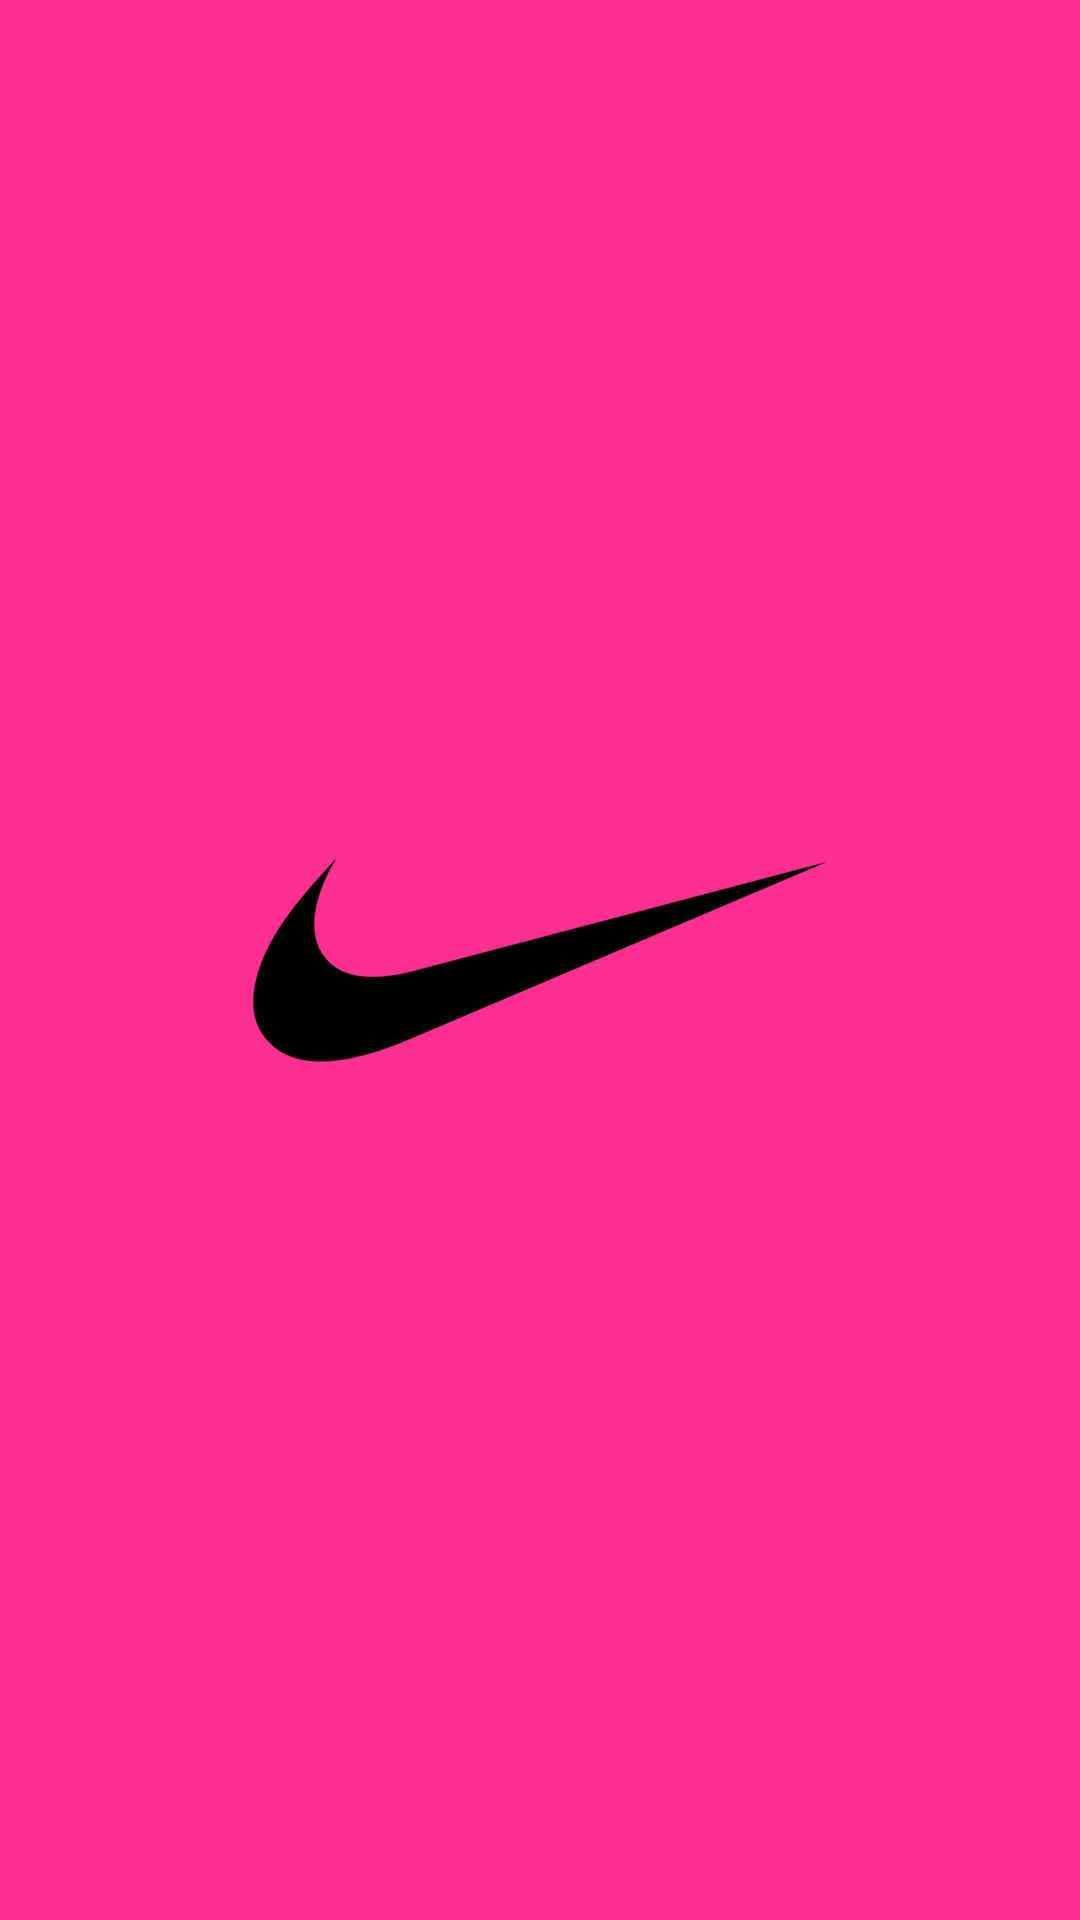 1080 x 1920 · jpeg - NIKE Logo iPhone Wallpaper | Pink Wallpaper! | Pinterest | Nike logo ...